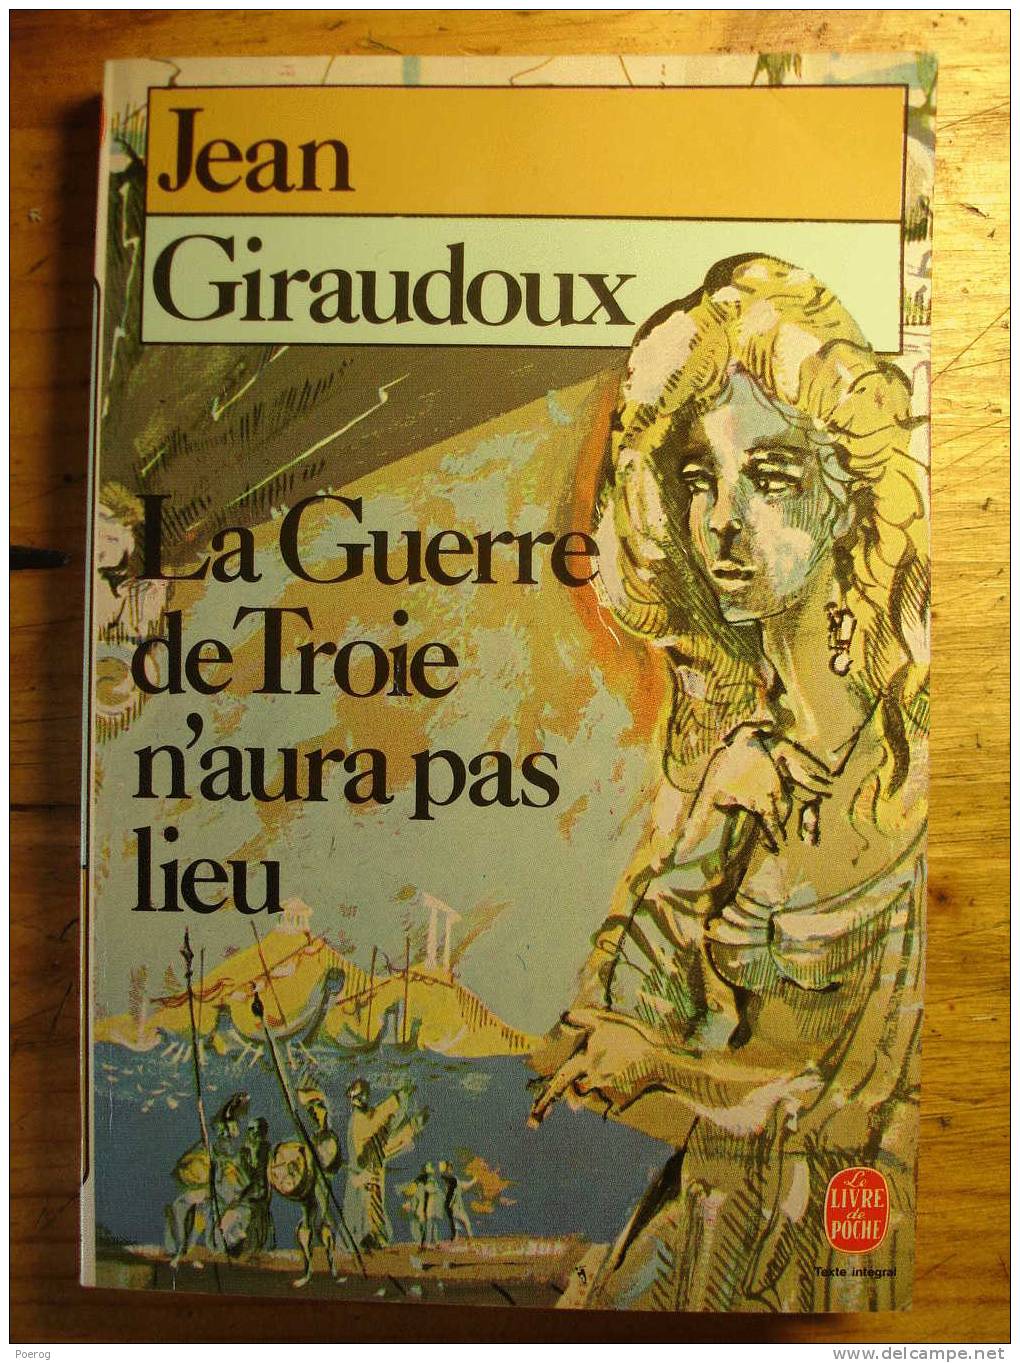 JEAN GIRAUDOUX - LA GUERRE DE TROIE N' AURA PAS LIEU - LE LIVRE DE POCHE N°945 - 1986 - Auteurs Français